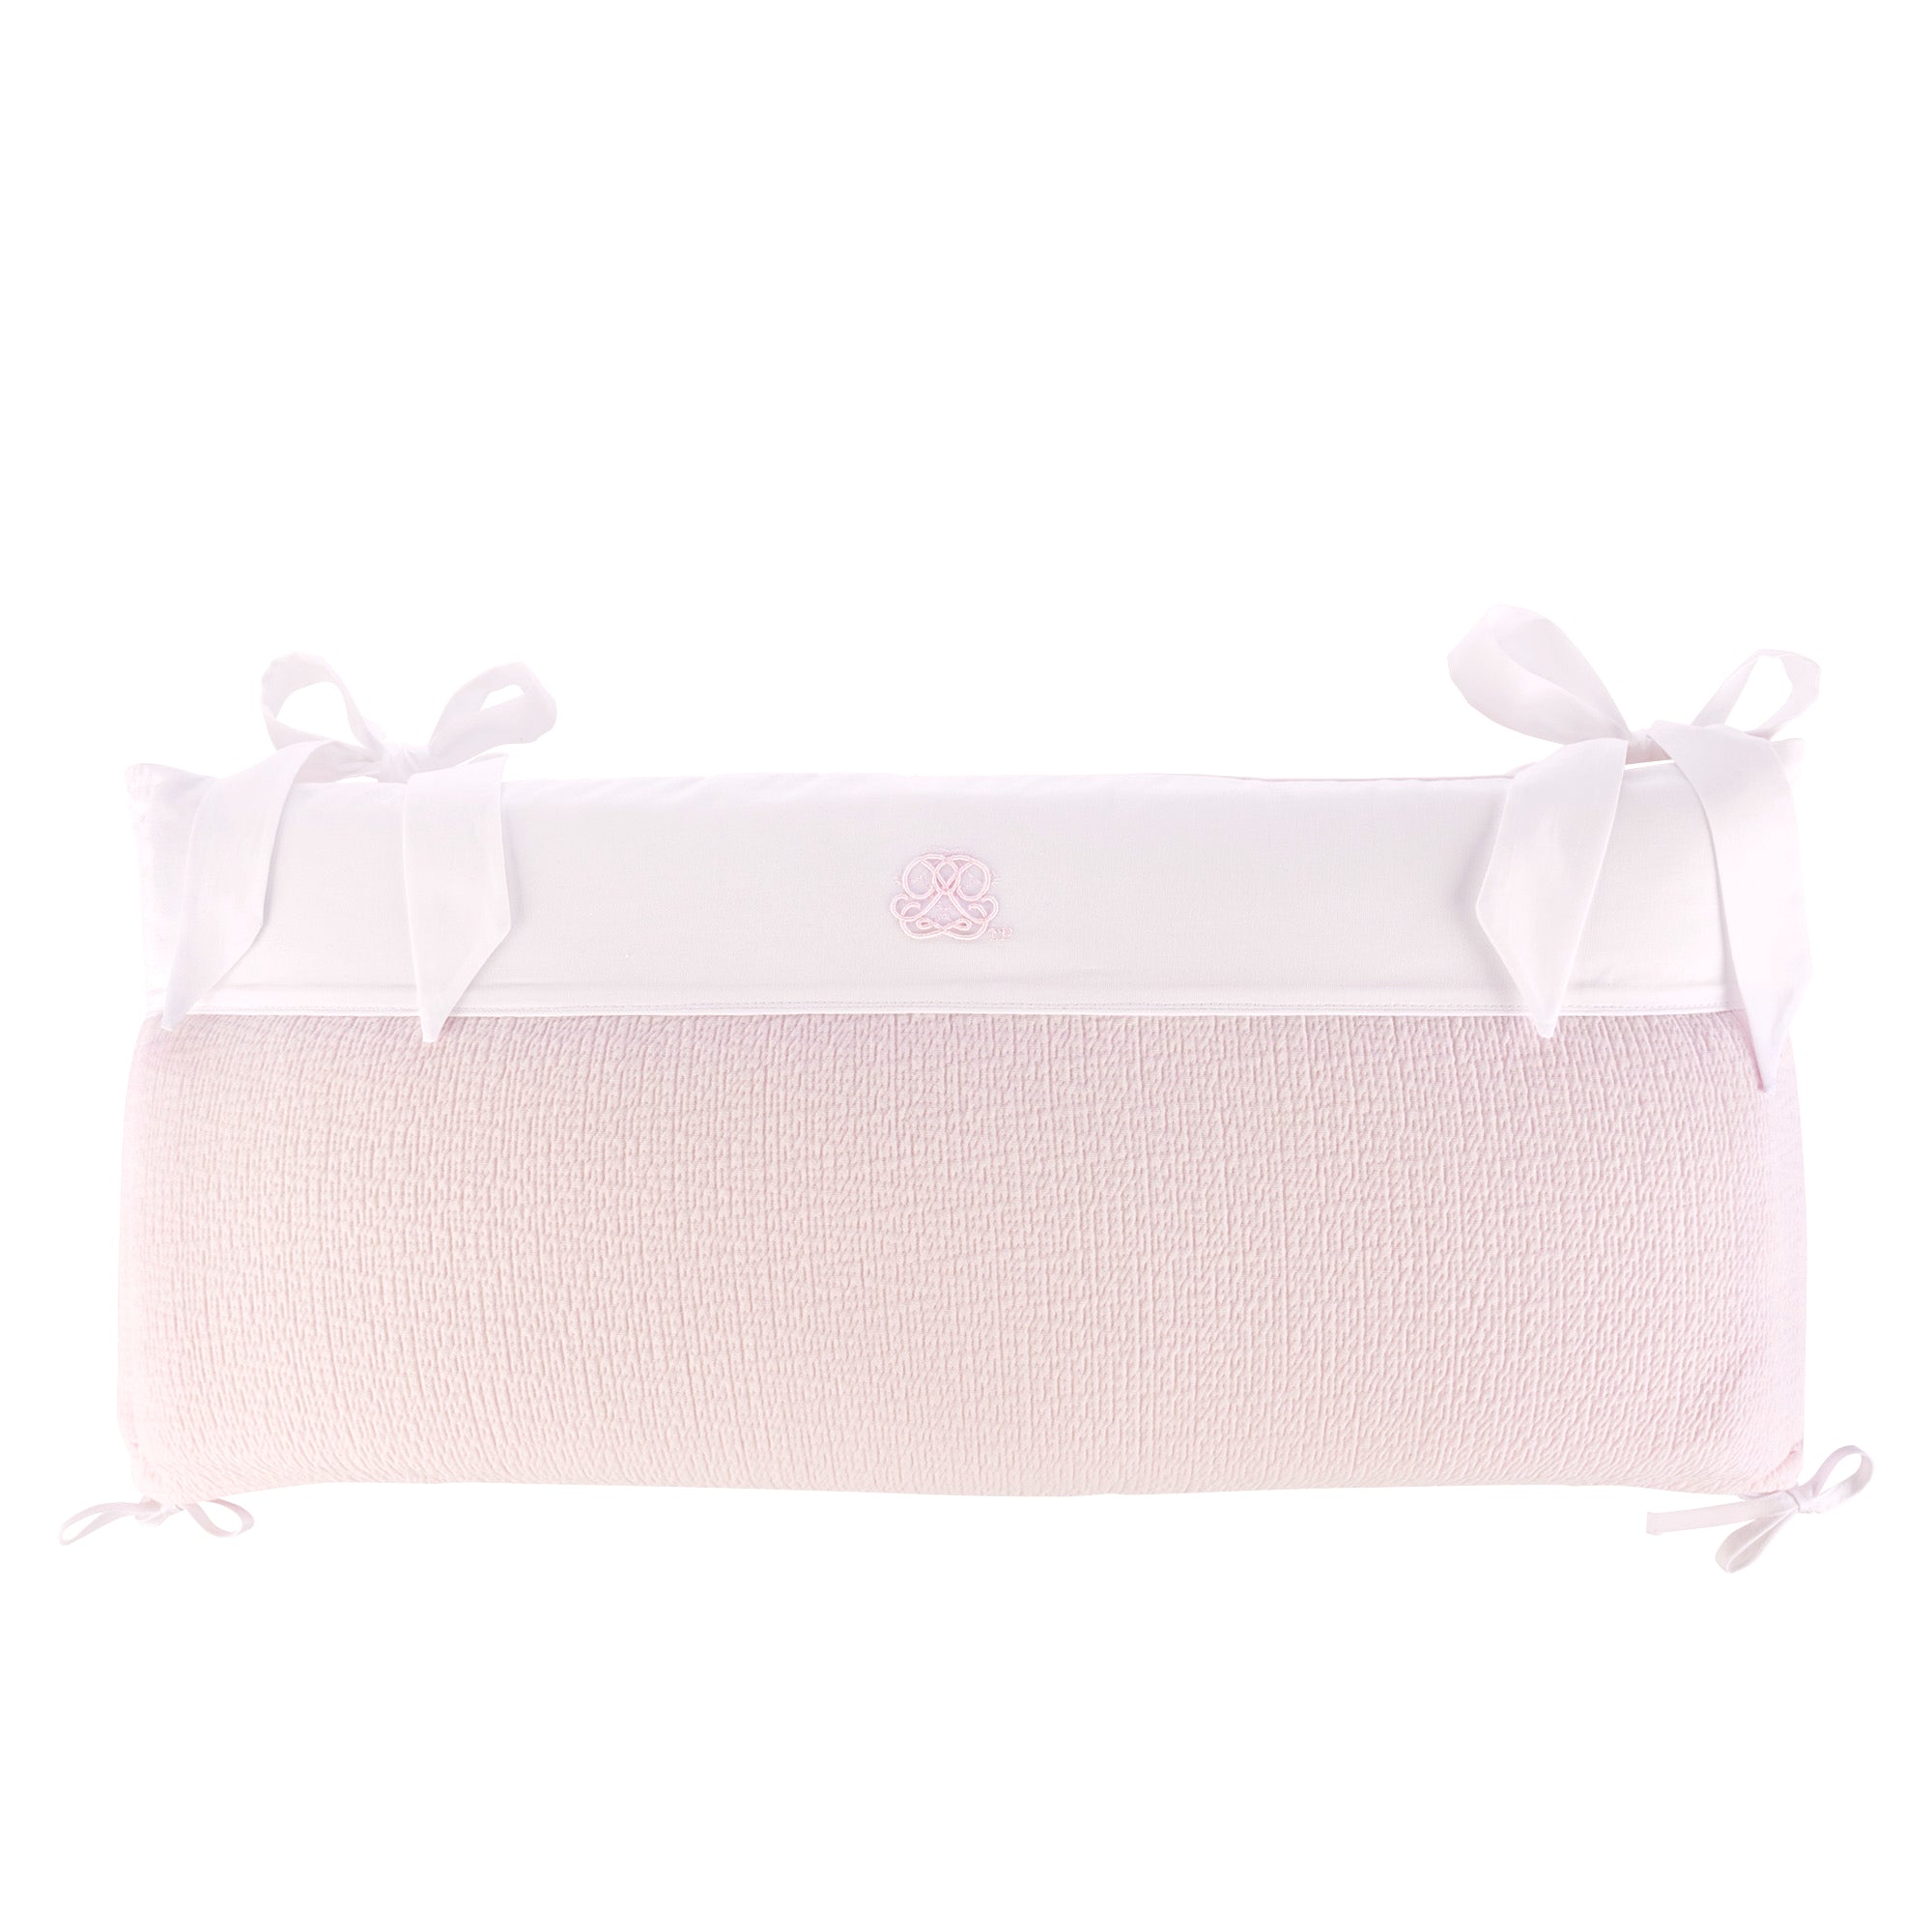 Theophile & Patachou Cot bed Bumper 60 cm - Cotton Pink